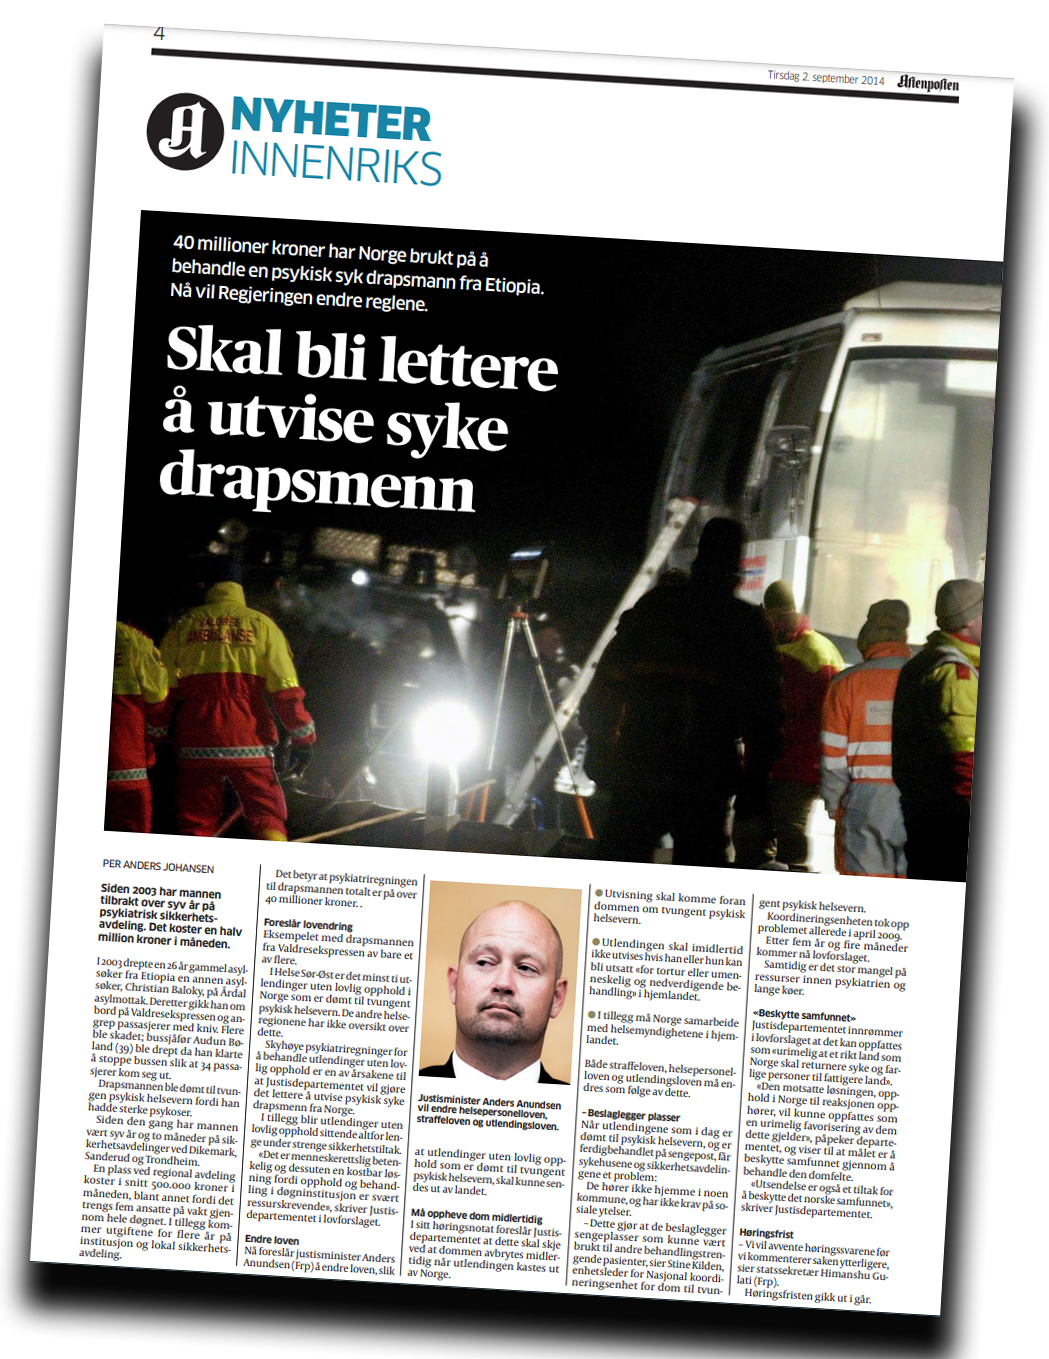 Aftenposten 2. september 2014.